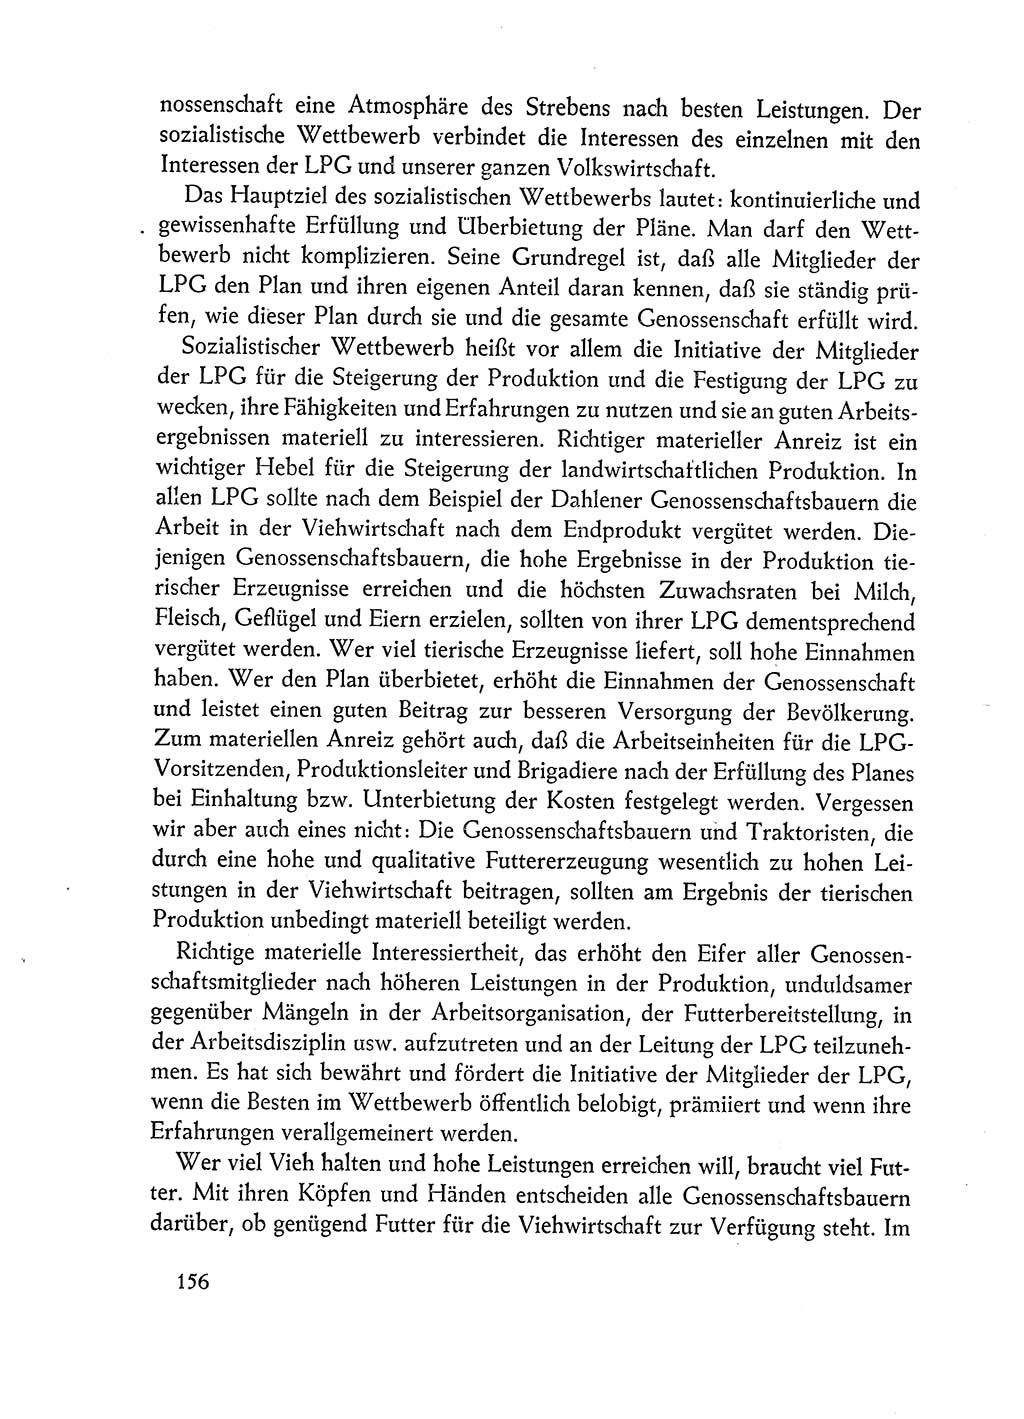 Dokumente der Sozialistischen Einheitspartei Deutschlands (SED) [Deutsche Demokratische Republik (DDR)] 1962-1963, Seite 156 (Dok. SED DDR 1962-1963, S. 156)